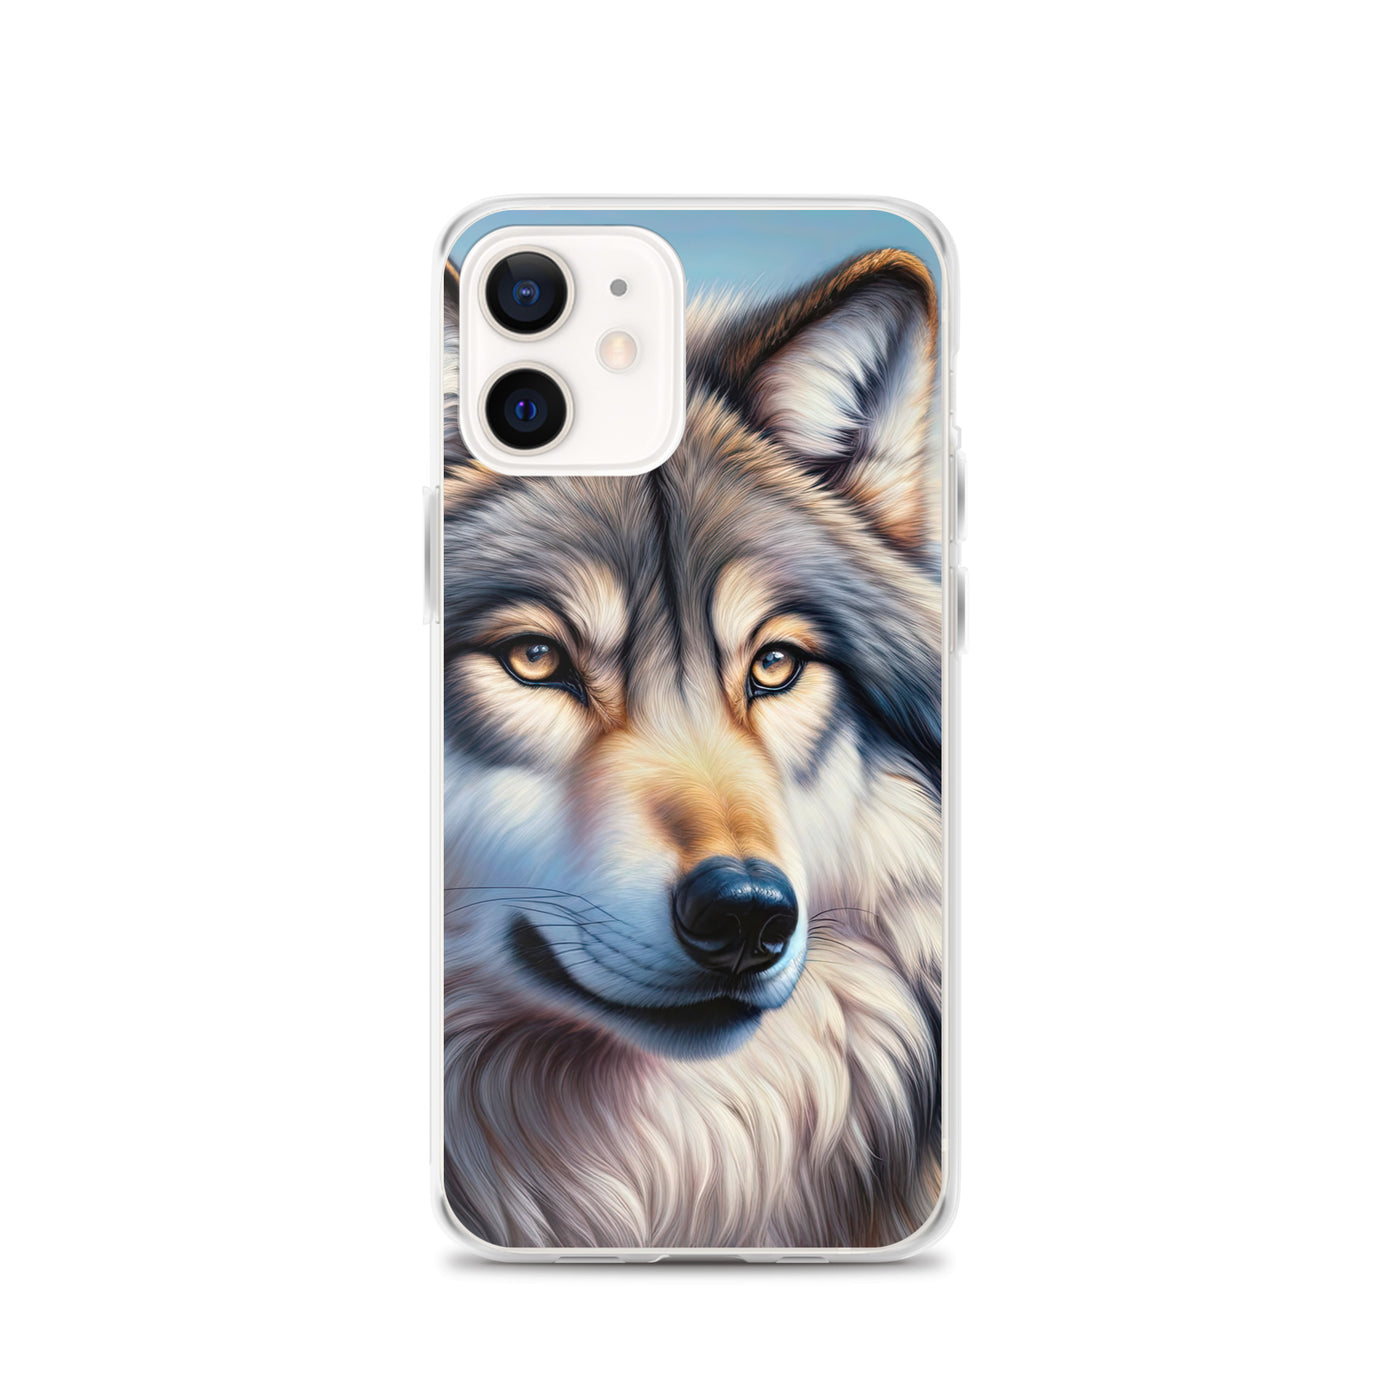 Ölgemäldeporträt eines majestätischen Wolfes mit intensiven Augen in der Berglandschaft (AN) - iPhone Schutzhülle (durchsichtig) xxx yyy zzz iPhone 12